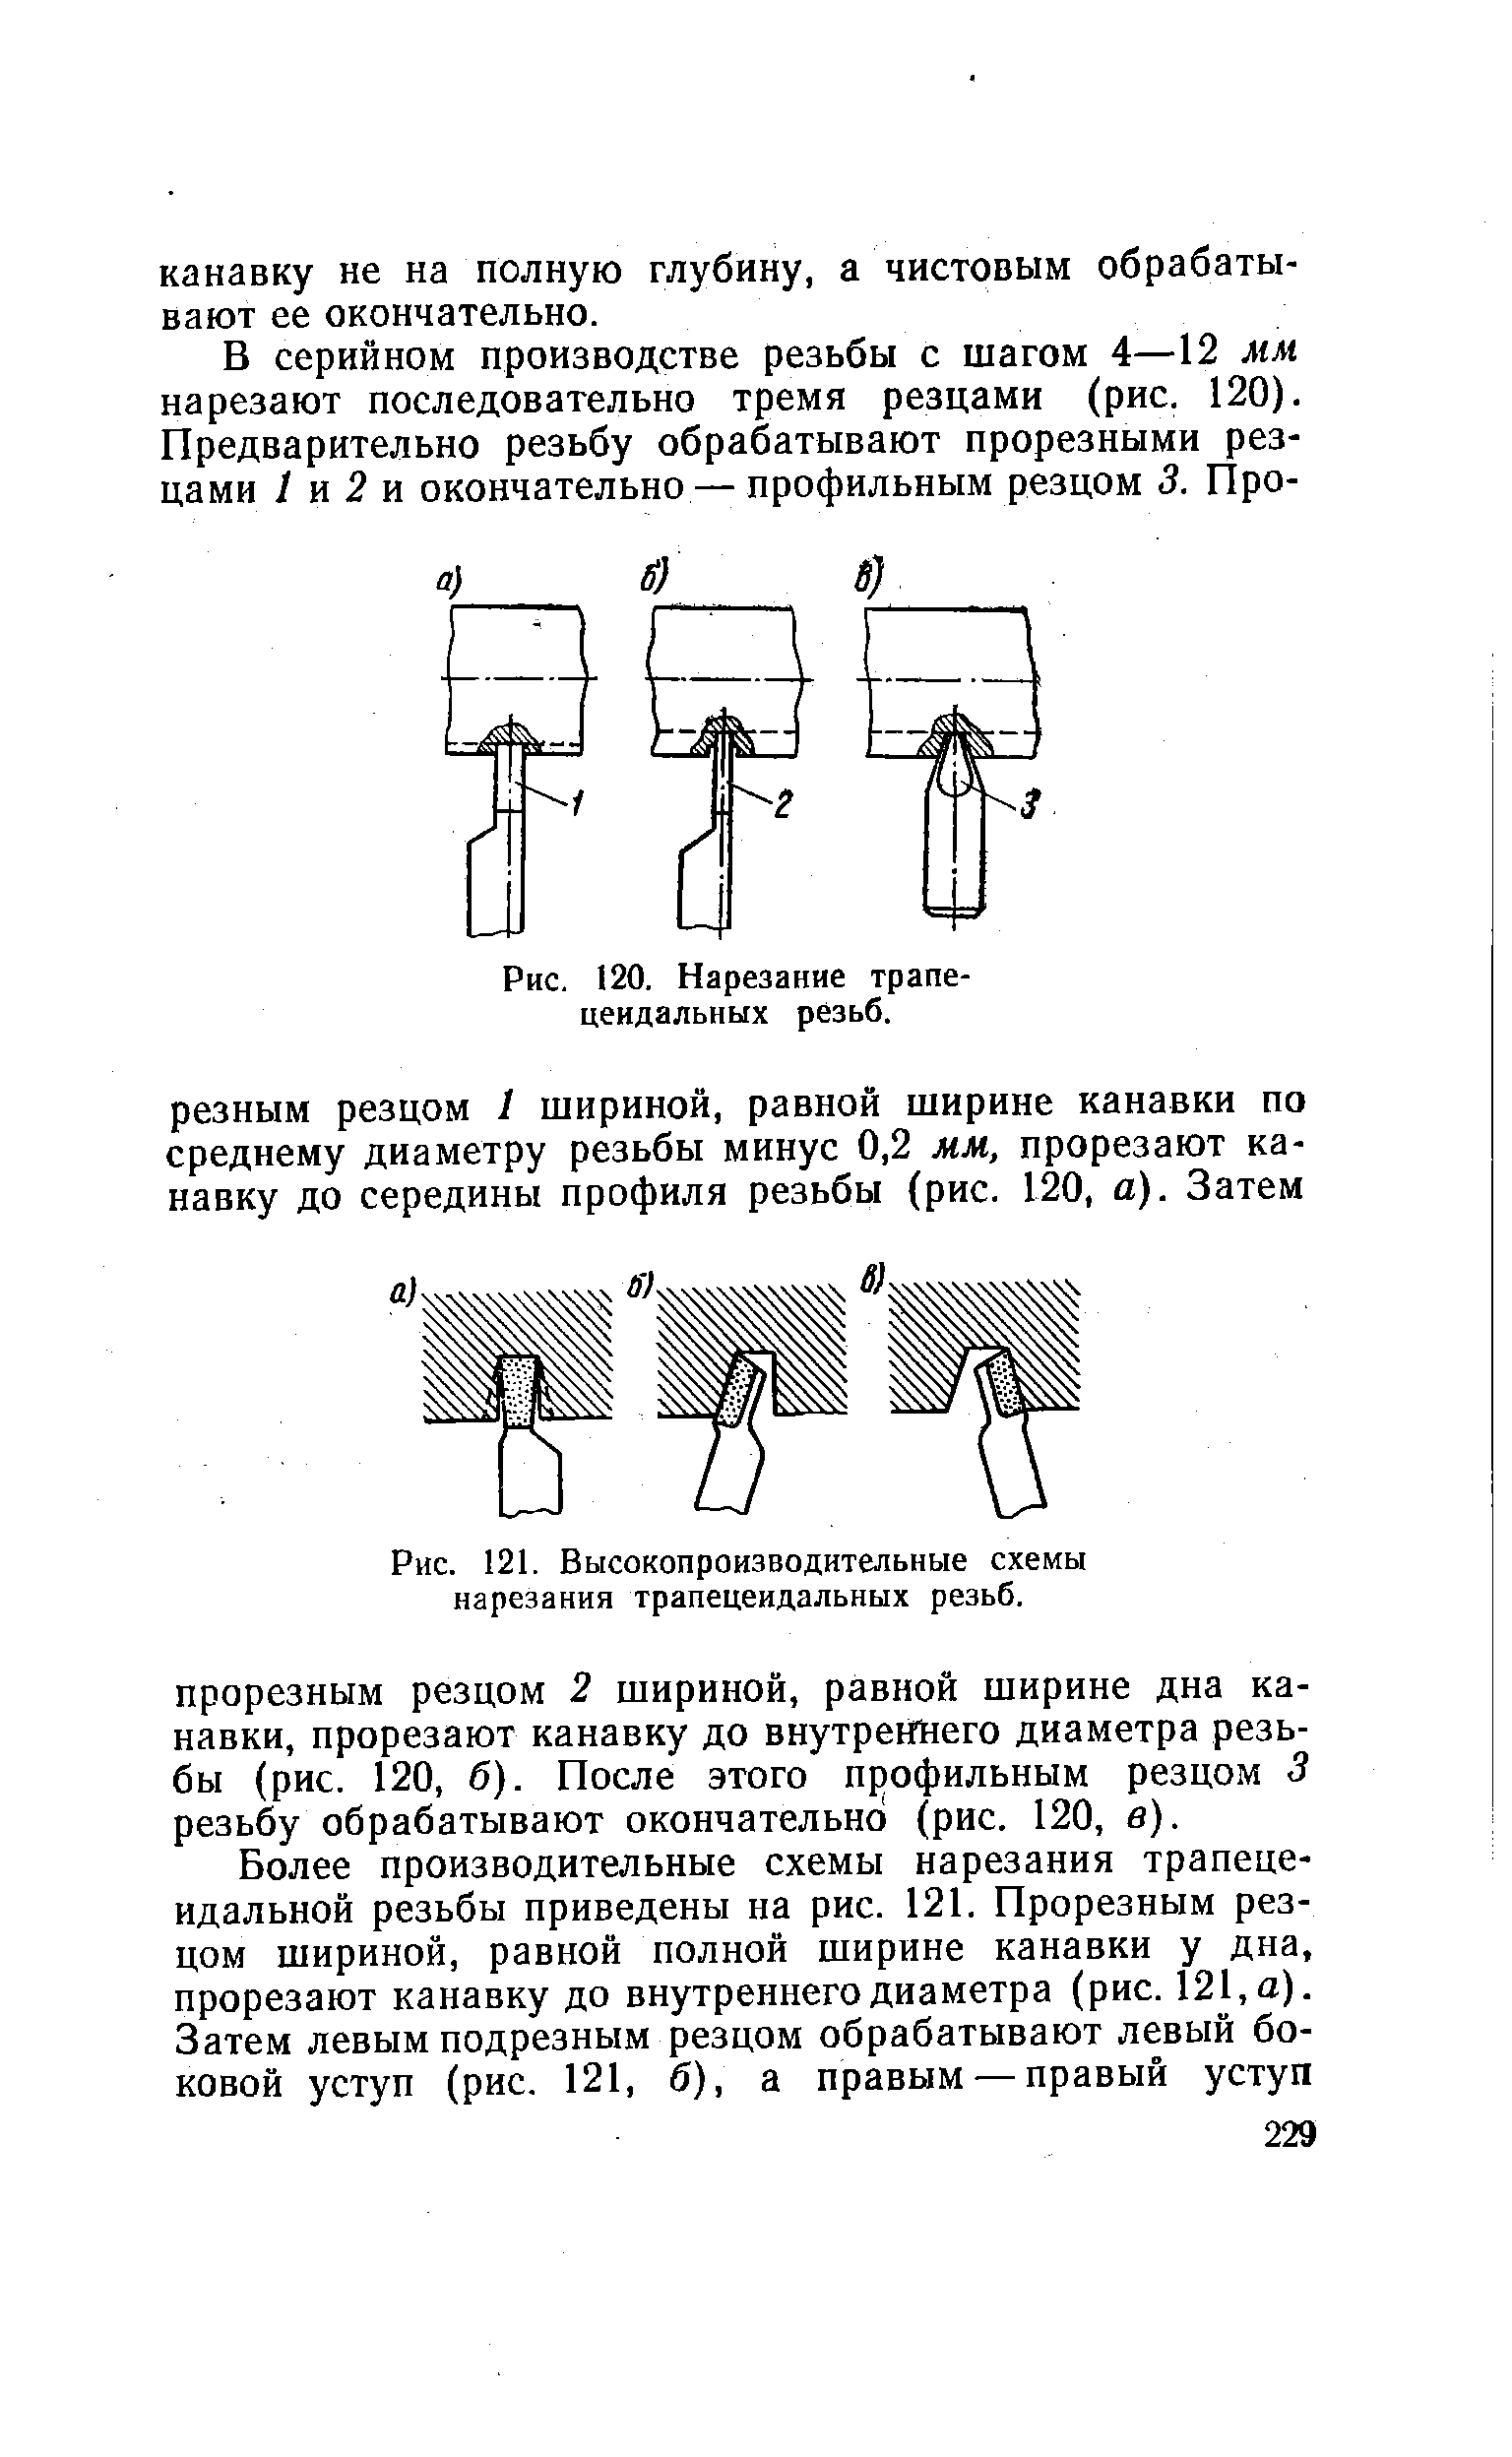 Рис. 121. Высокопроизводительные схемы нарезания трапецеидальных резьб.
